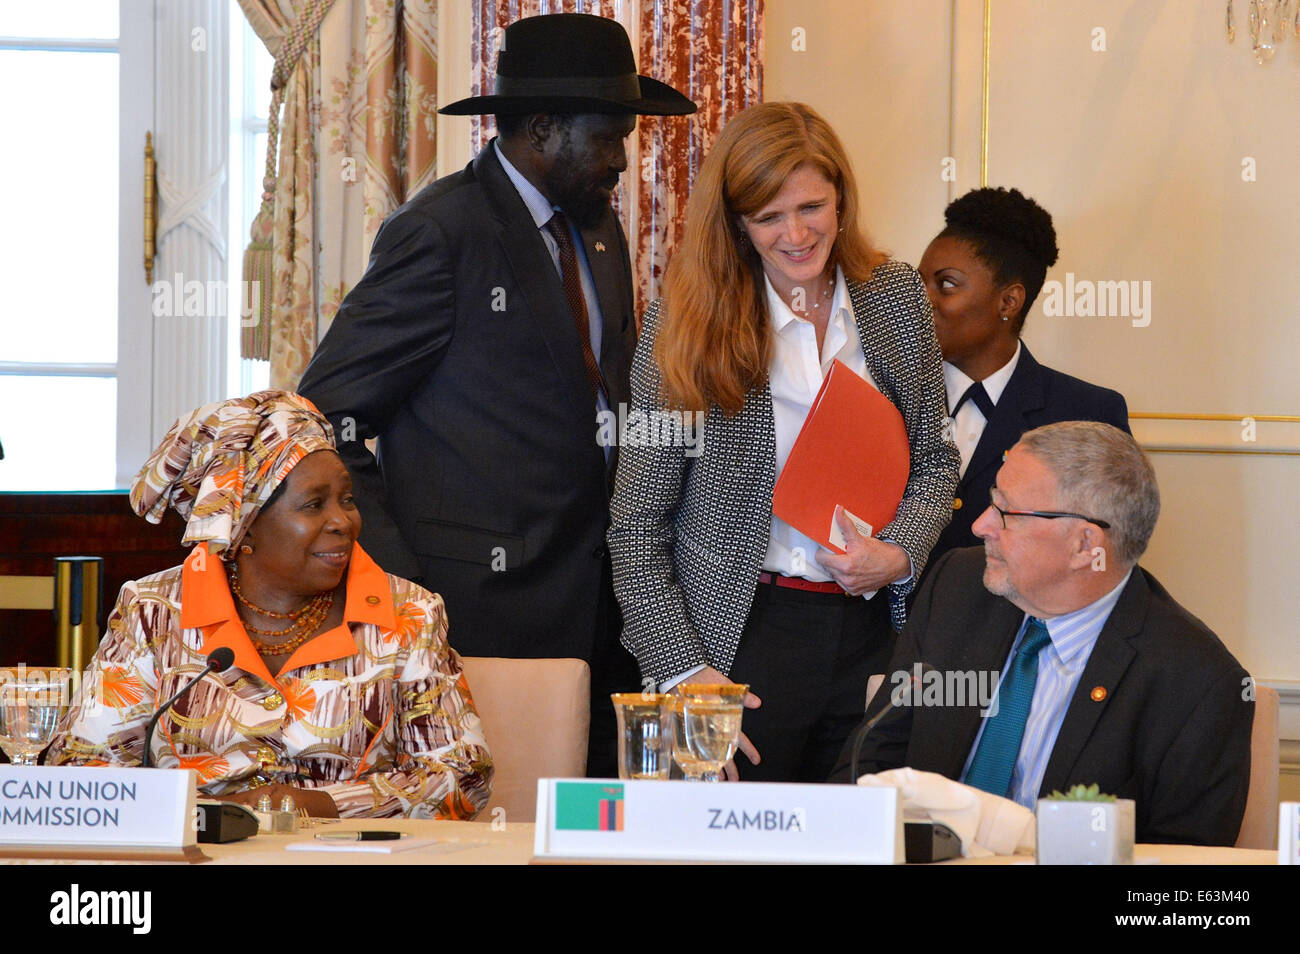 Avec la Commission de l'Union africaine Président Dr Nkosazana Dlamini-Zuma à sur, l'Ambassadeur des États-Unis, Samantha Power, représentant permanent auprès de l'Organisation des Nations Unies, parle avec le Vice-président zambien Guy Scott avant un déjeuner de travail offert par le Président Ba Banque D'Images